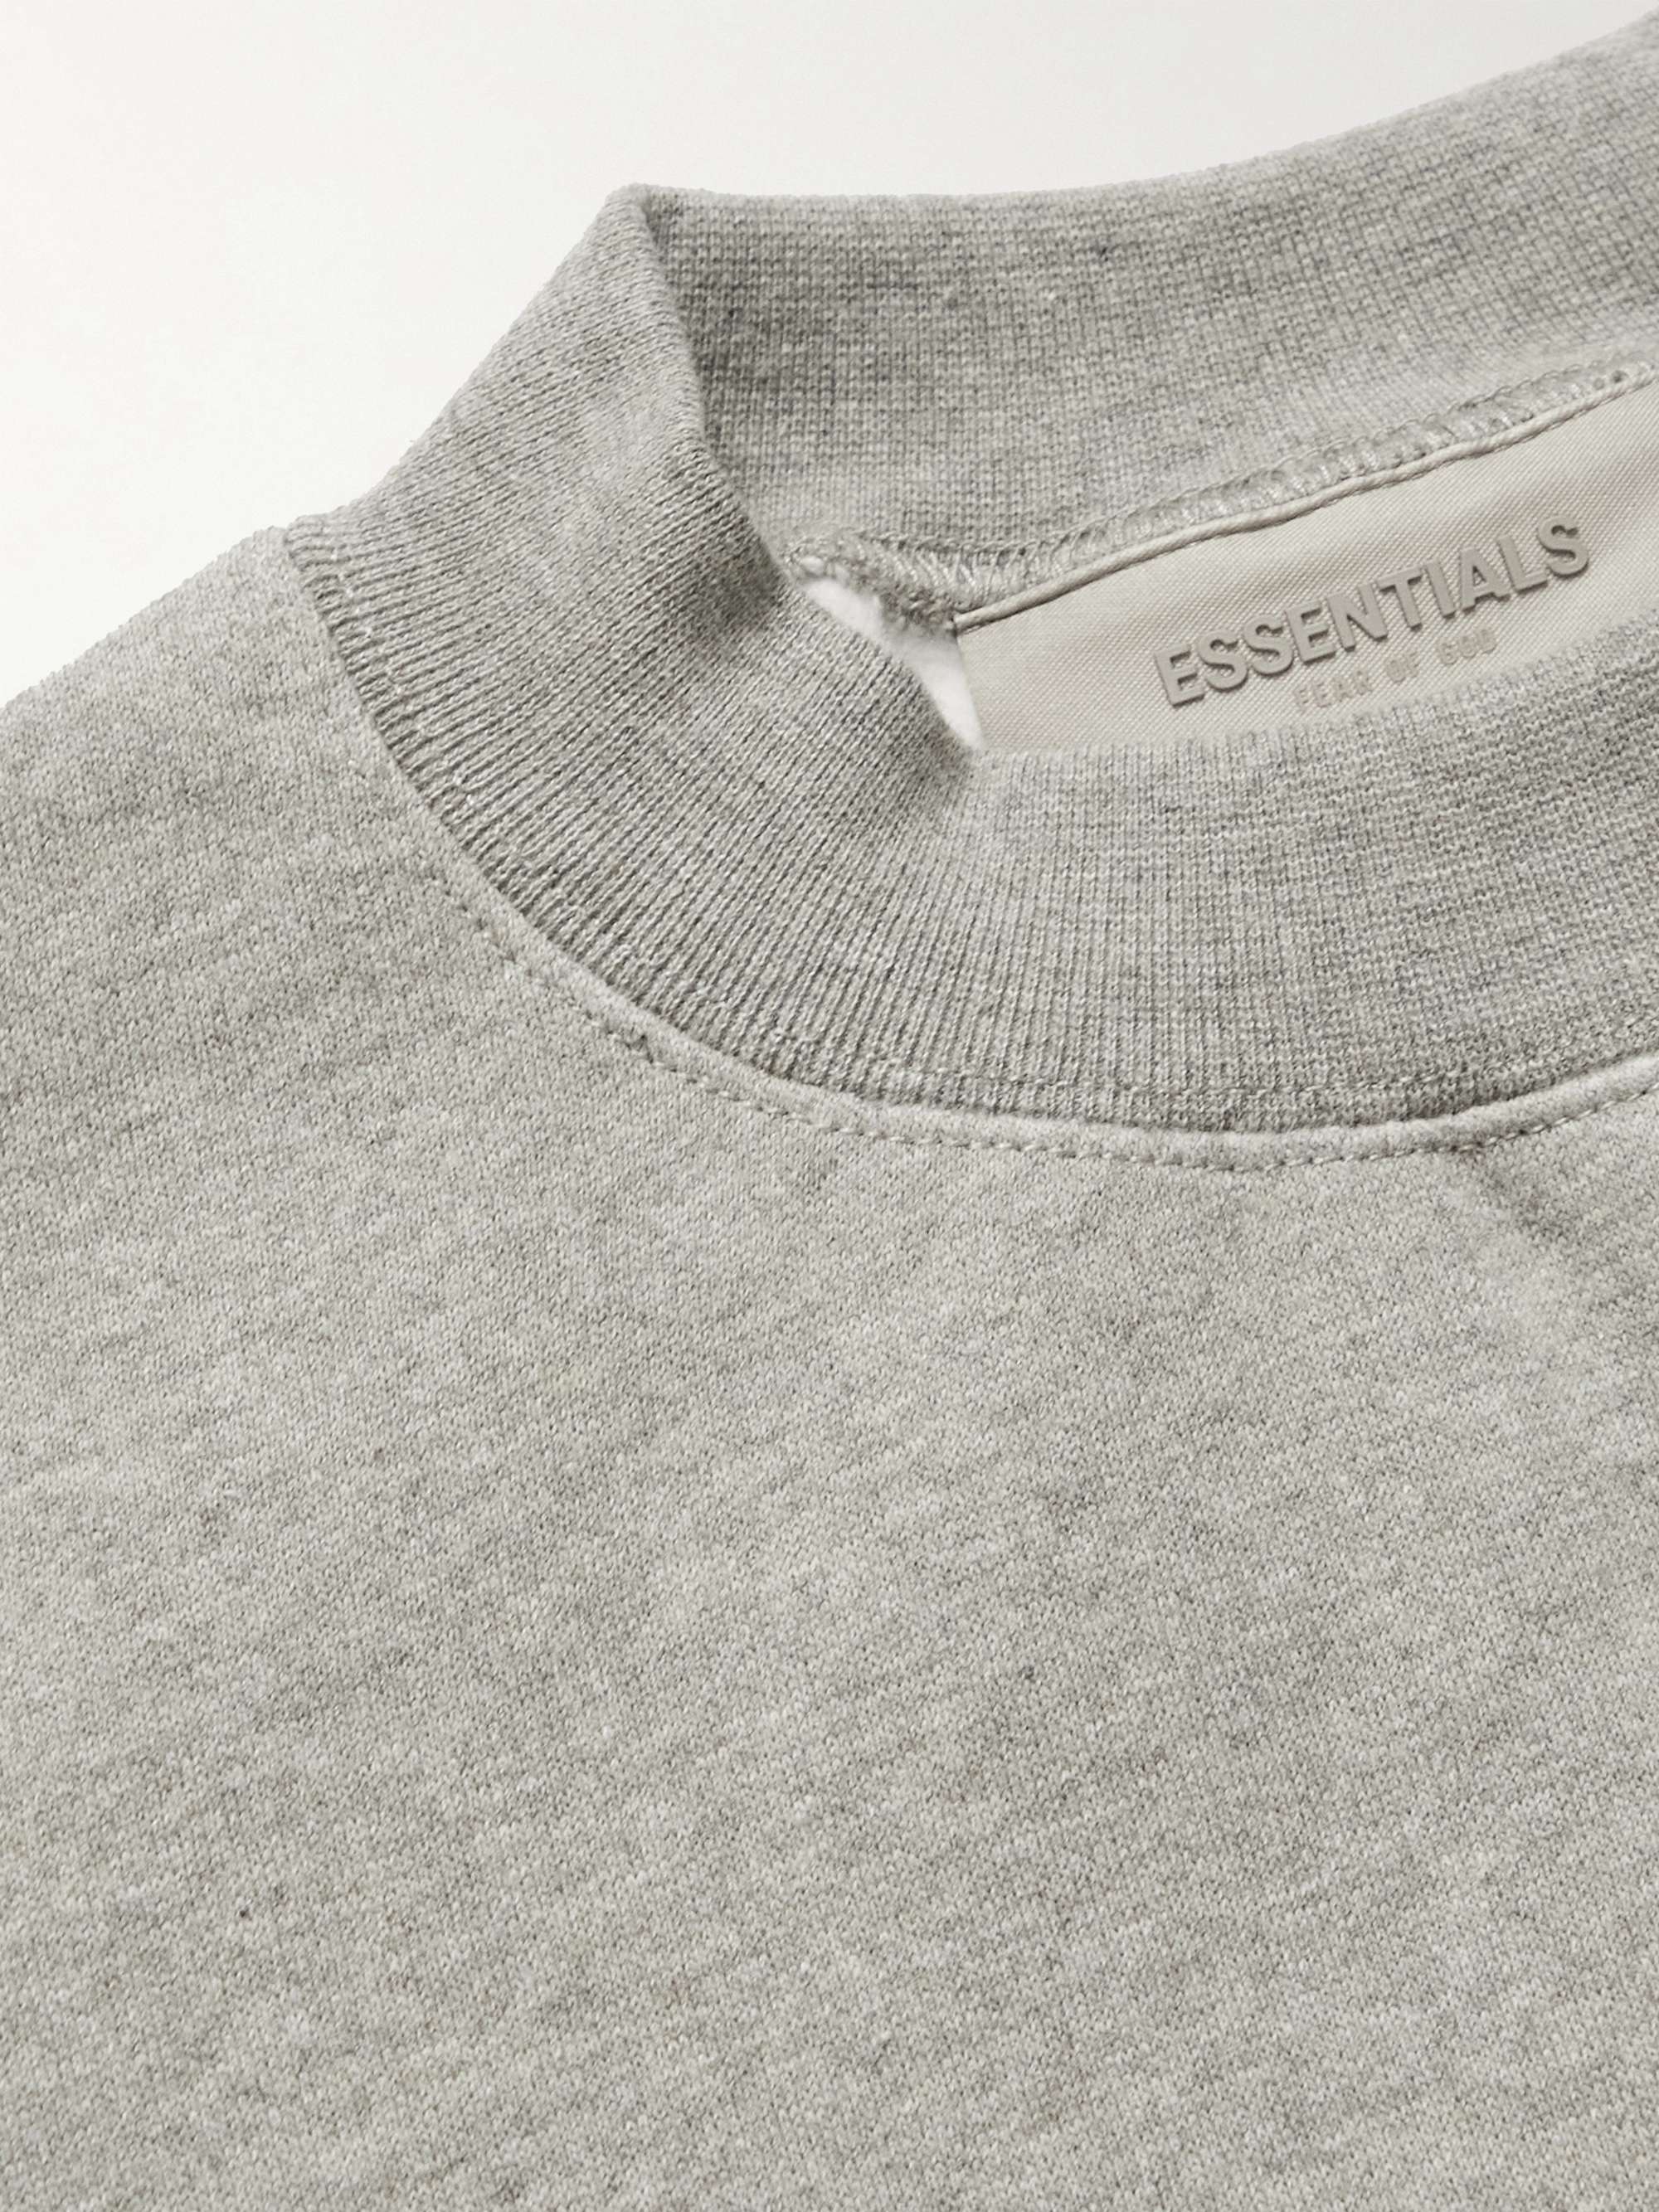 Essentials Boys' Fleece Crew-Neck Sweatshirts 